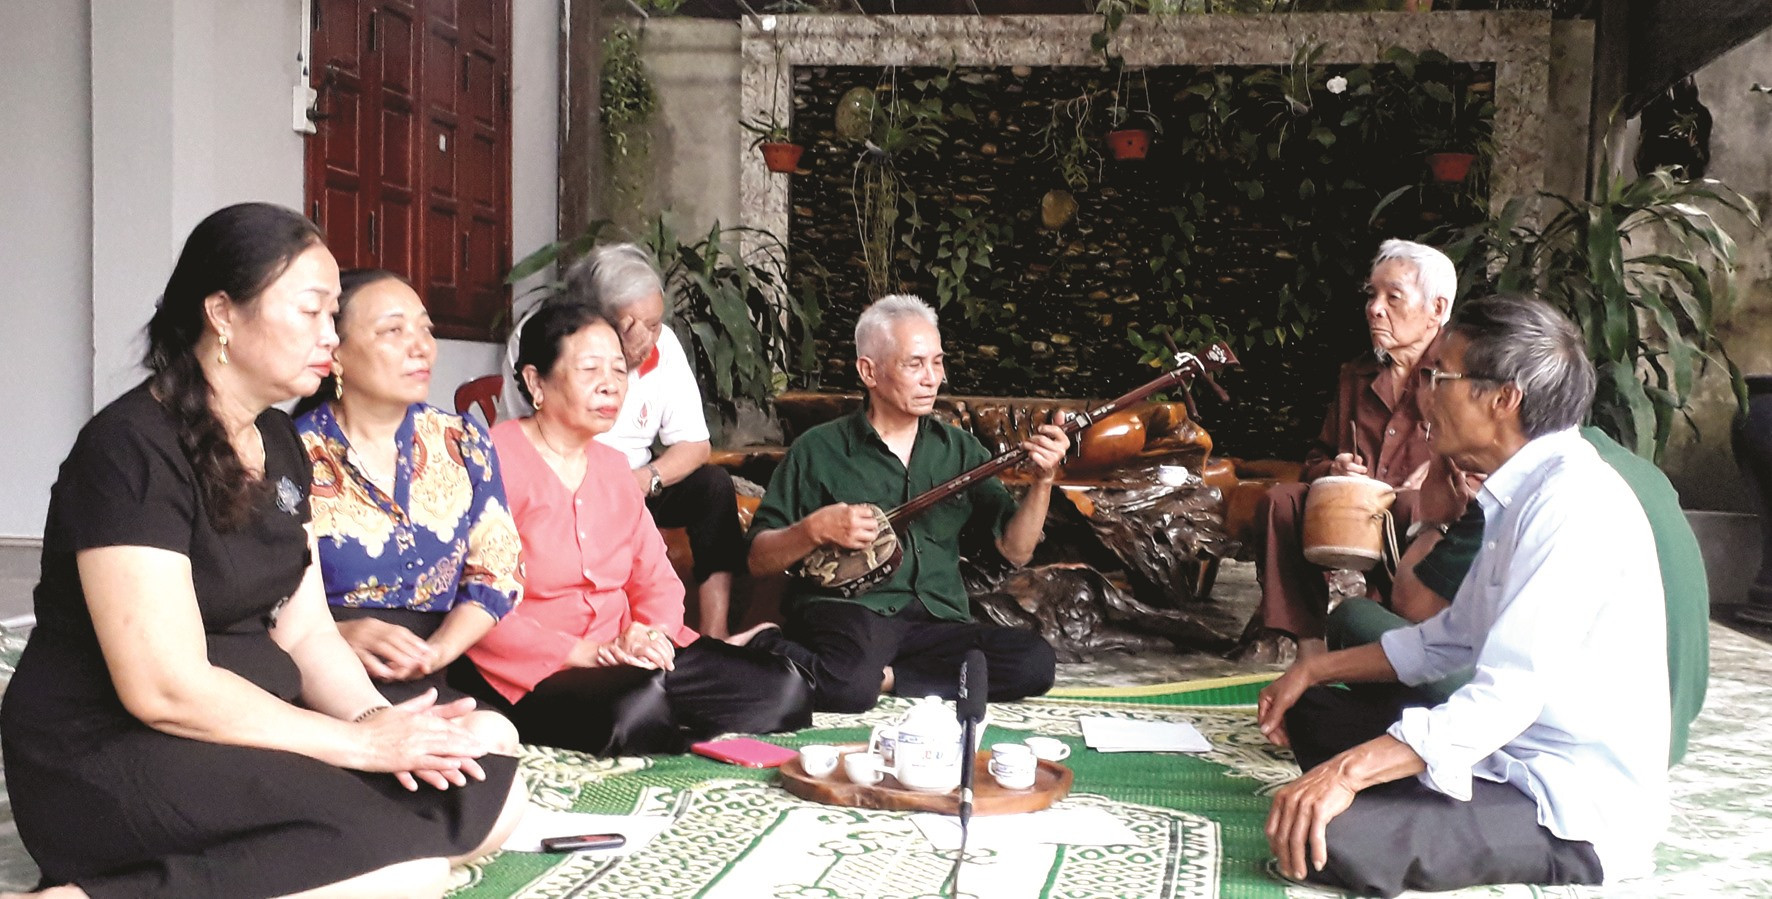 Câu lạc bộ nghệ thuật truyền thống đang tập hát chèo truyền thống.